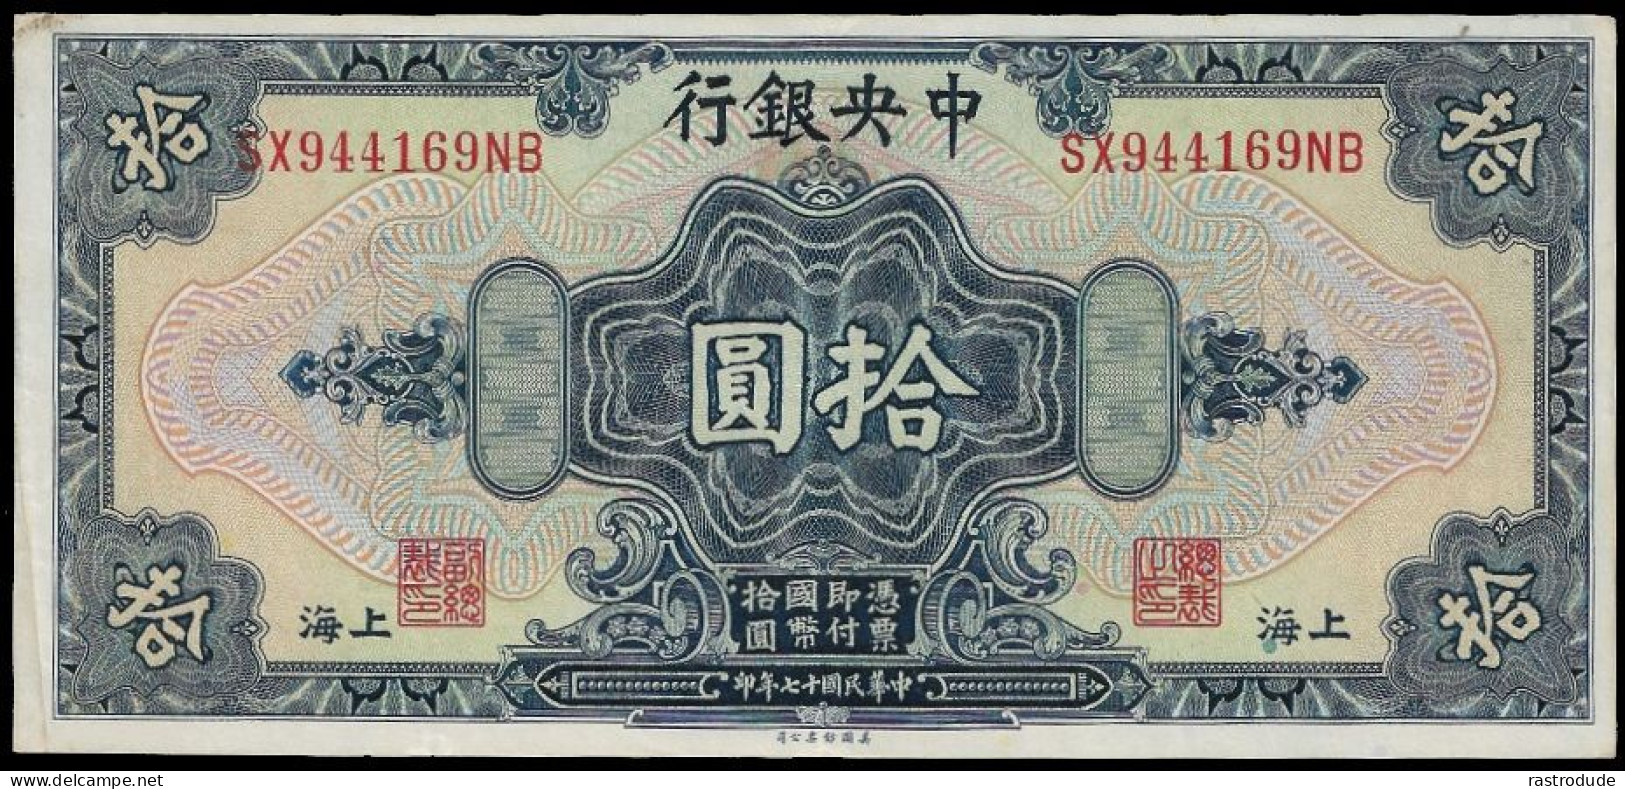 1928 CHINA 10 DOLLARS SHANGHAI - THE CENTRAL BANK OF CHINA DR. SUN YAT-SEN VF - China